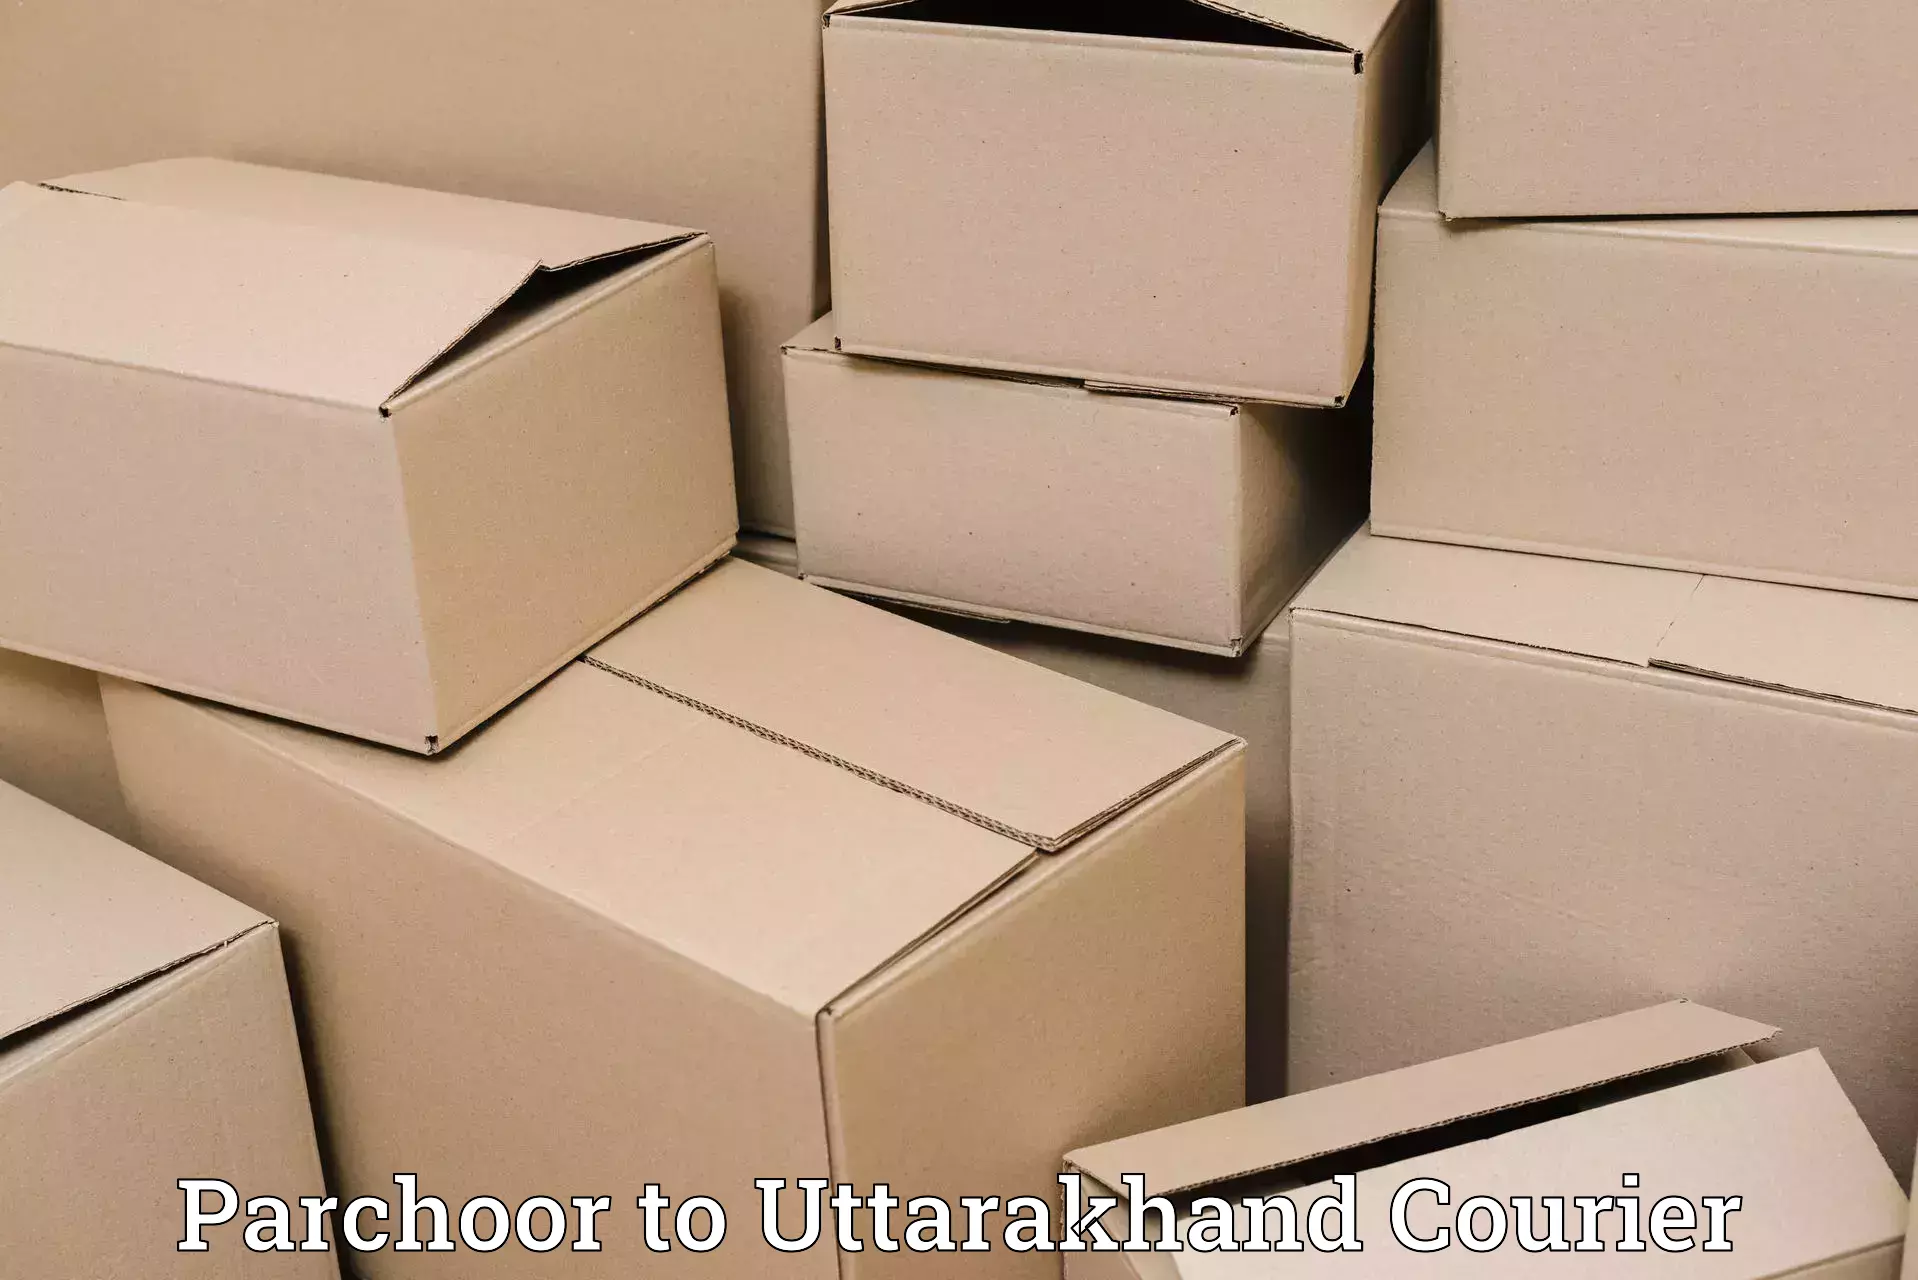 Specialized shipment handling Parchoor to IIT Roorkee